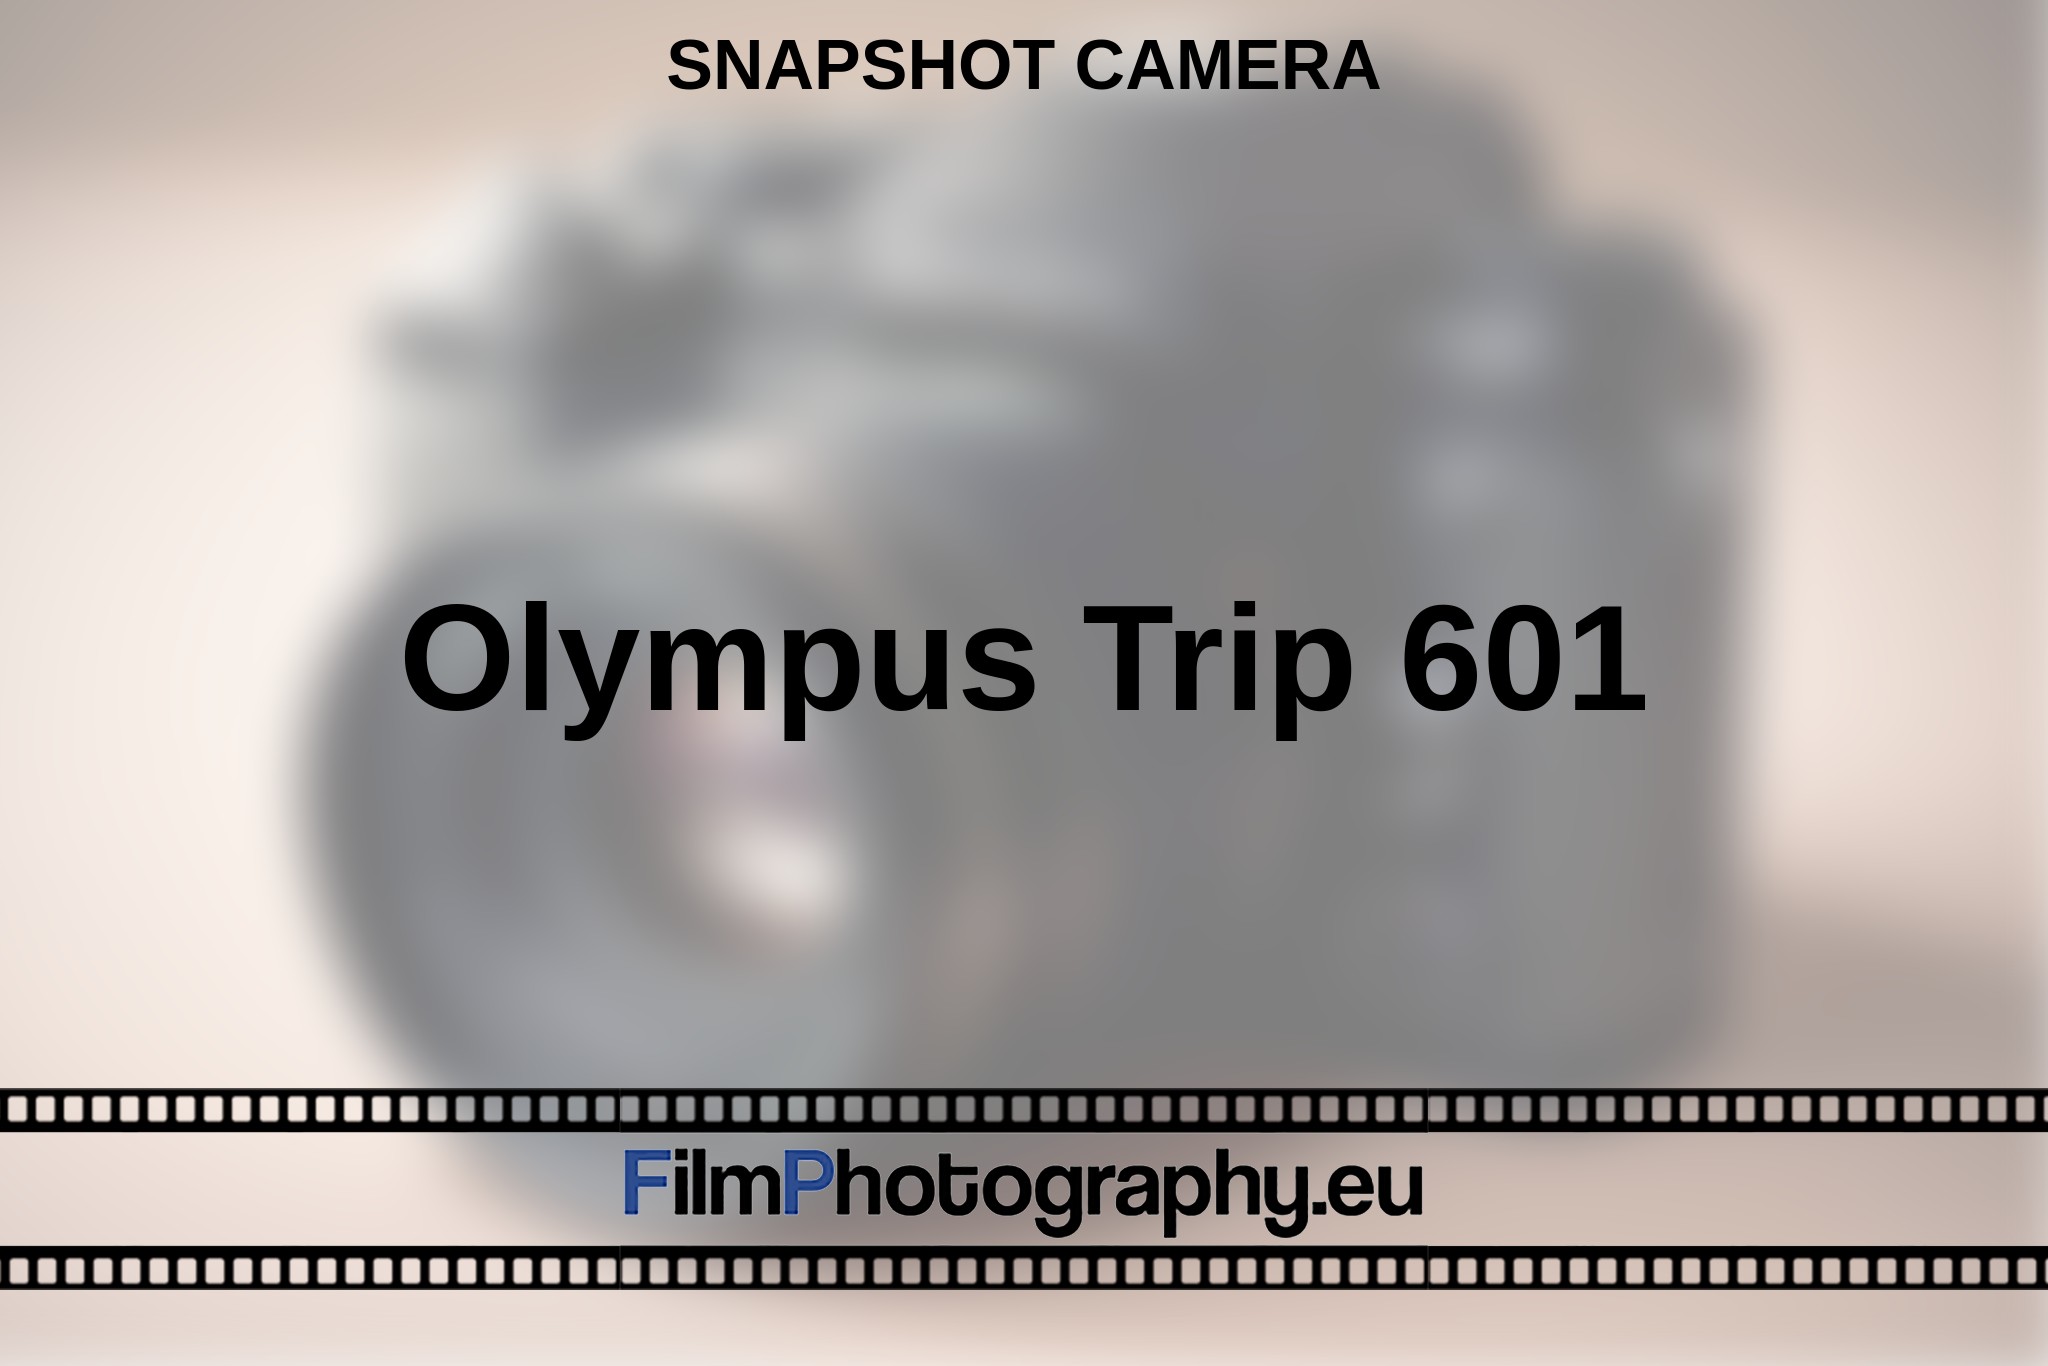 olympus-trip-601-snapshot-camera-en-bnv.jpg